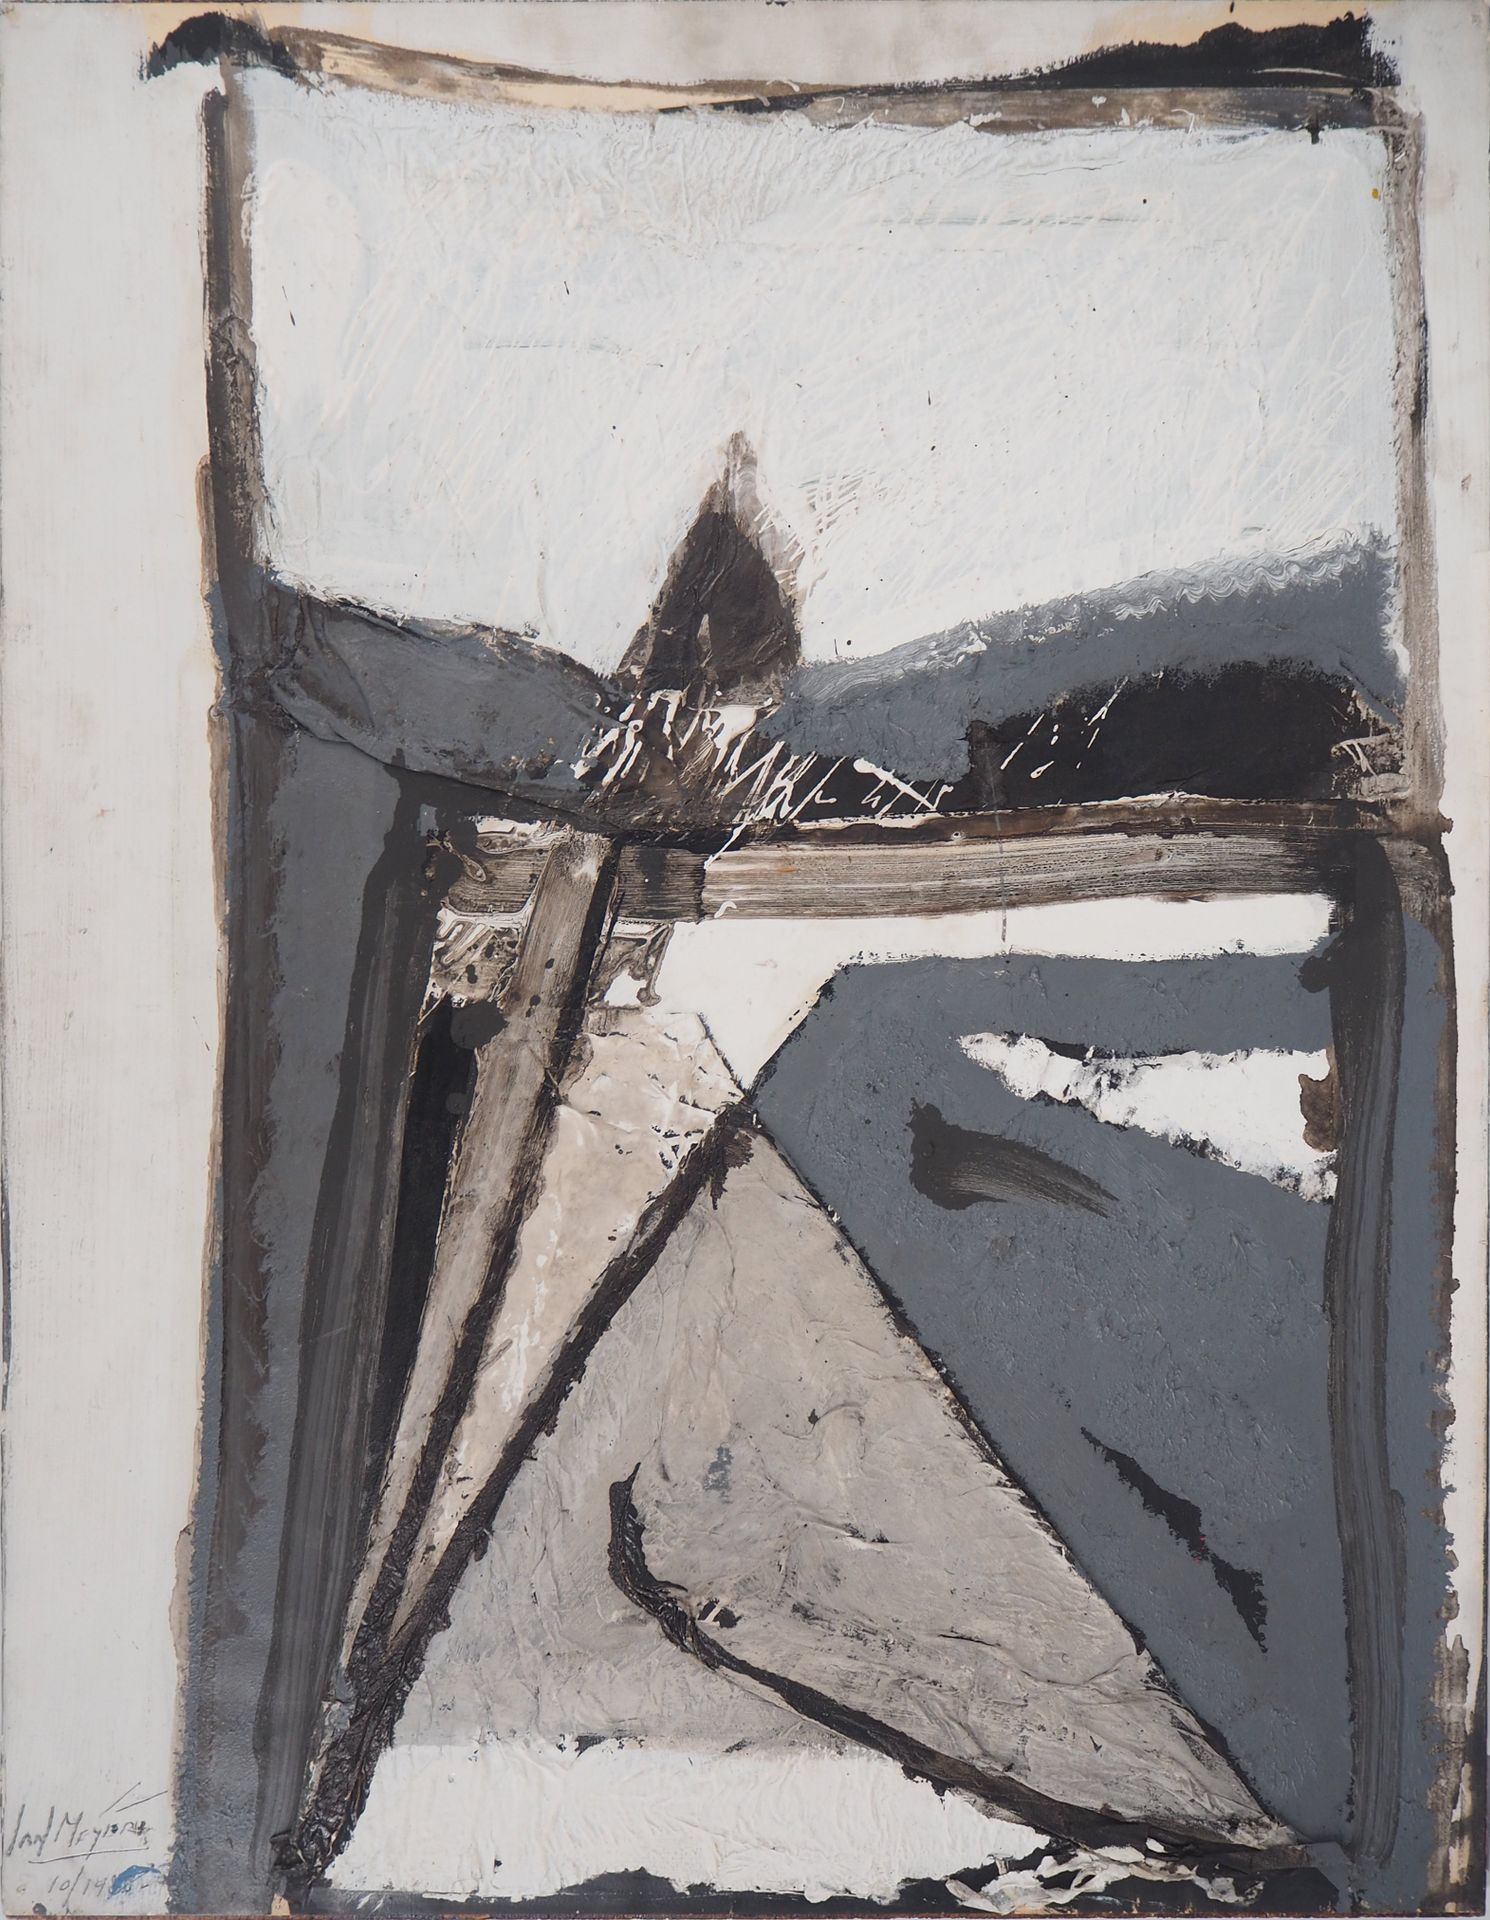 Jan MEYER Jan Meyer (Jan MEIJER 1927 - 1995, bekannt als)

Abstraktion in Schwar&hellip;